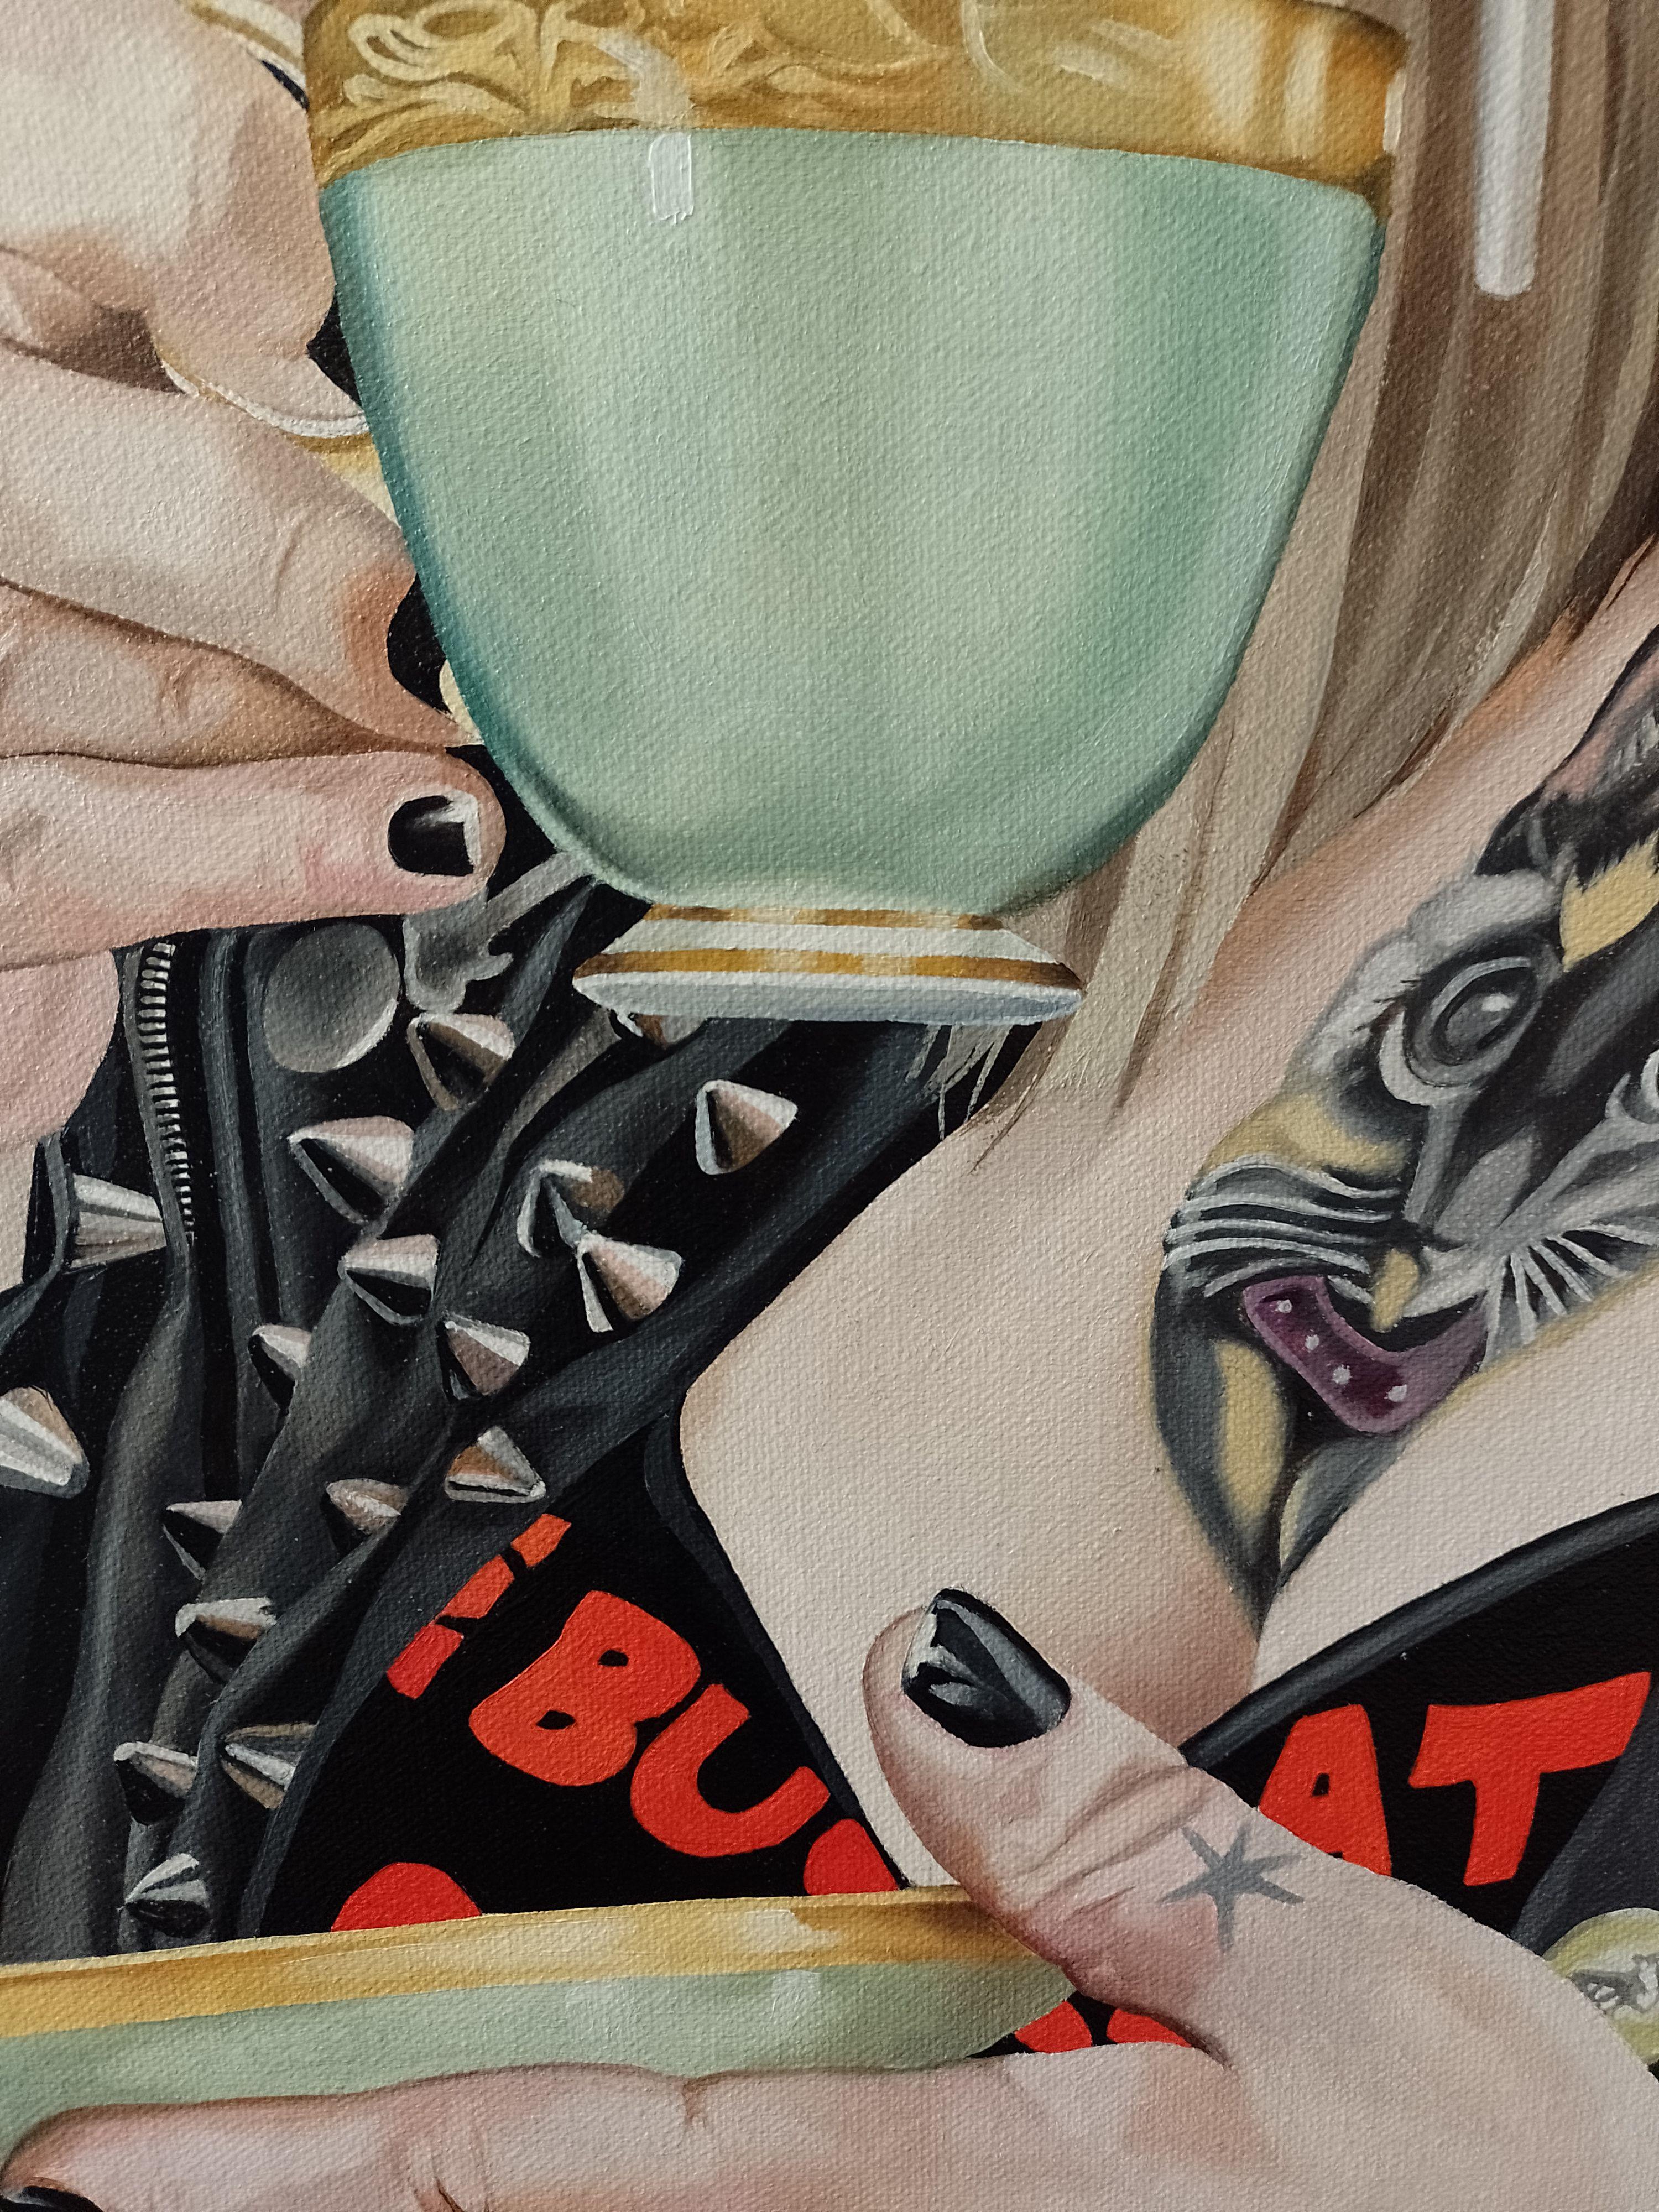 Je voulais peindre un punk buvant une tasse de thé... ces deux choses me paraissent 